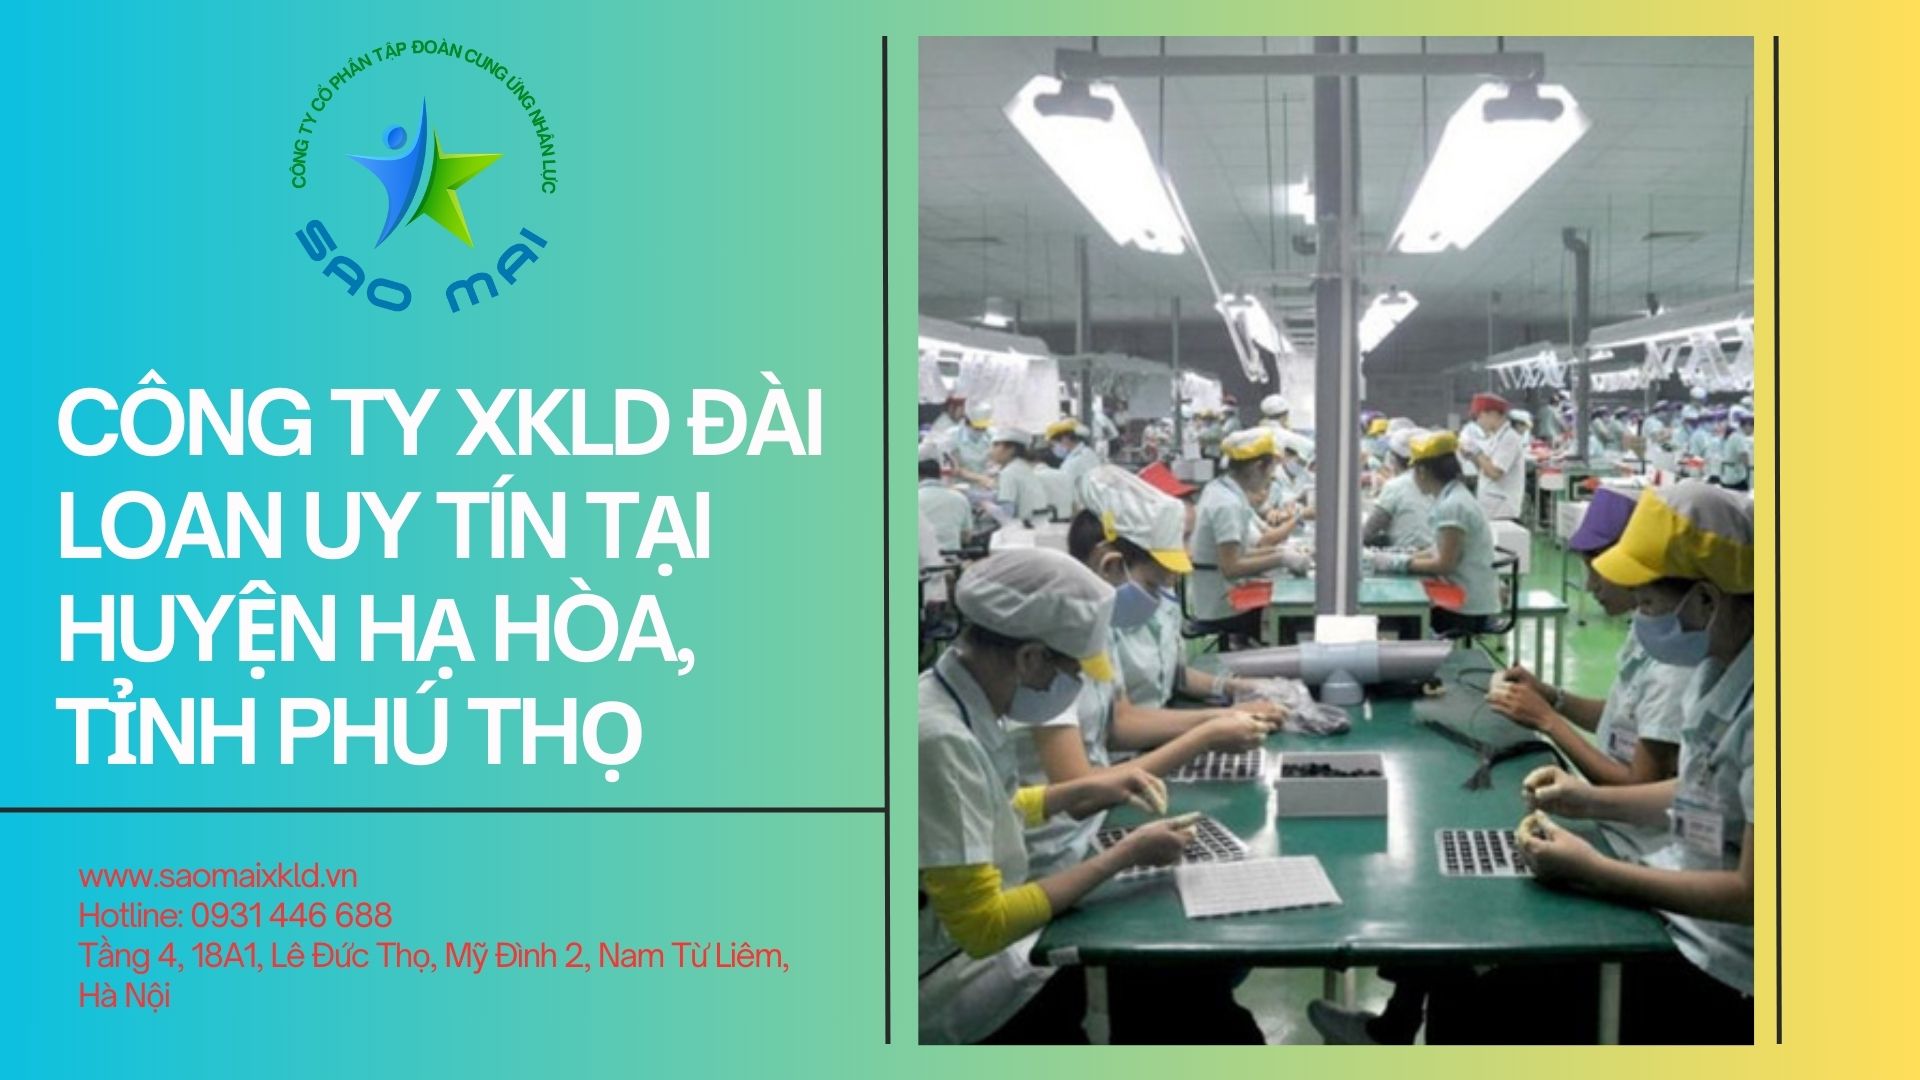 Công ty xuất khẩu lao động Đài Loan uy tín, chi phí thấp tại huyện HẠ HÒA, tỉnh PHÚ THỌ